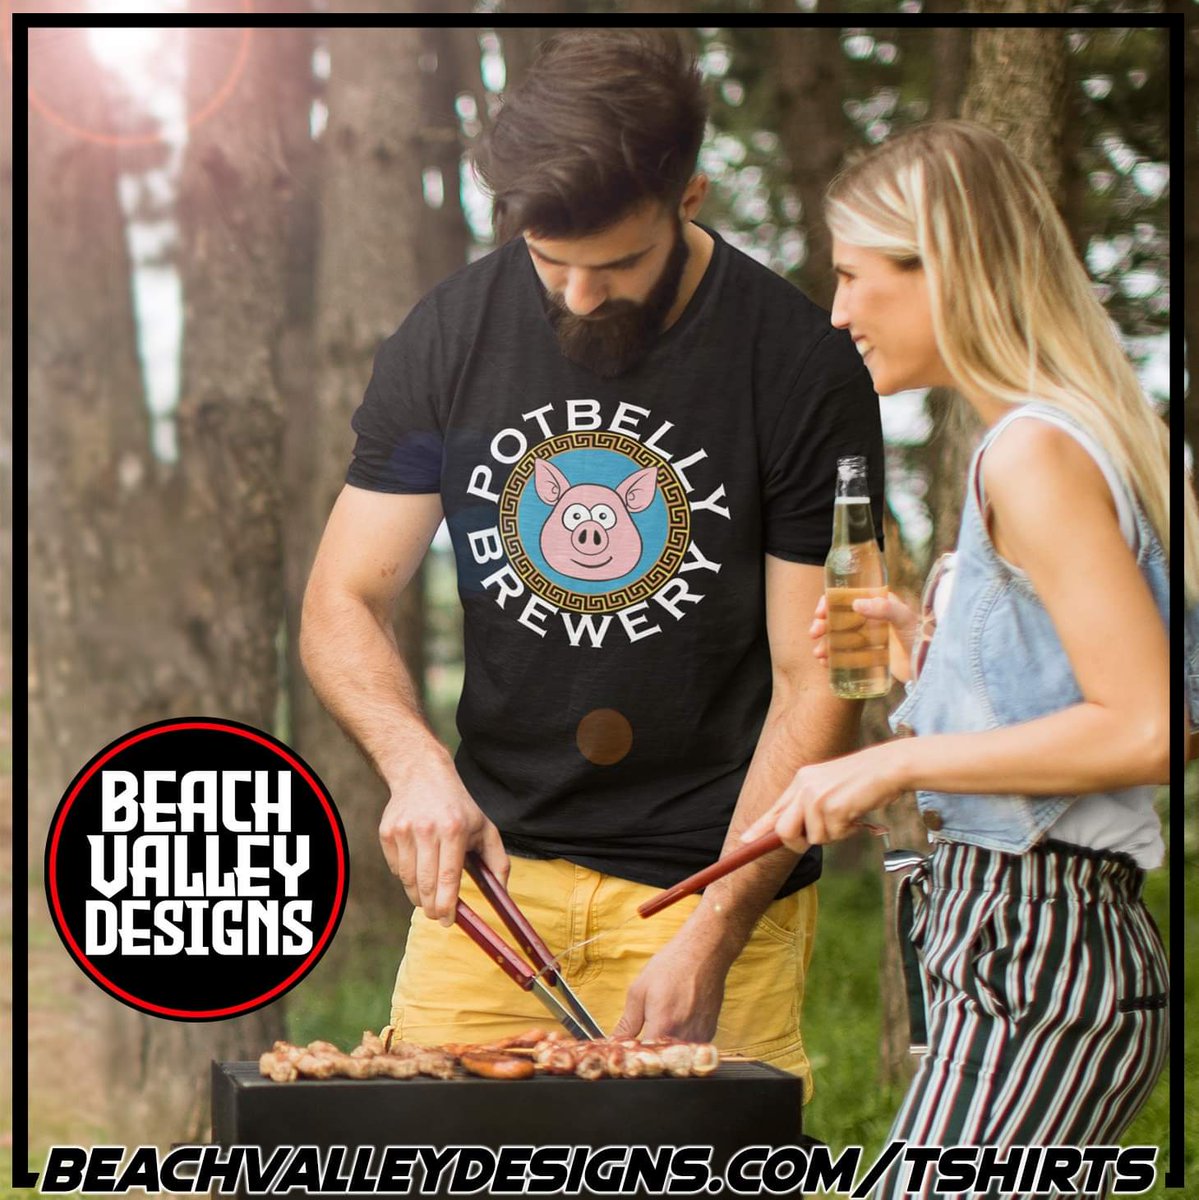 🐷 Potbelly Brewery Limited T-Shirts can be purchased from  beachvalleydesigns.com/tshirts

#tshirt #shirt #tshirts #shirts #sweatshirt #tshirtdesign #tshirtmurah #poloshirt #customshirts #teeshirt #tshirtprinting #whiteshirt #tshirtshop #sweatshirts #vintagetshirt #shirtless #teeshirts